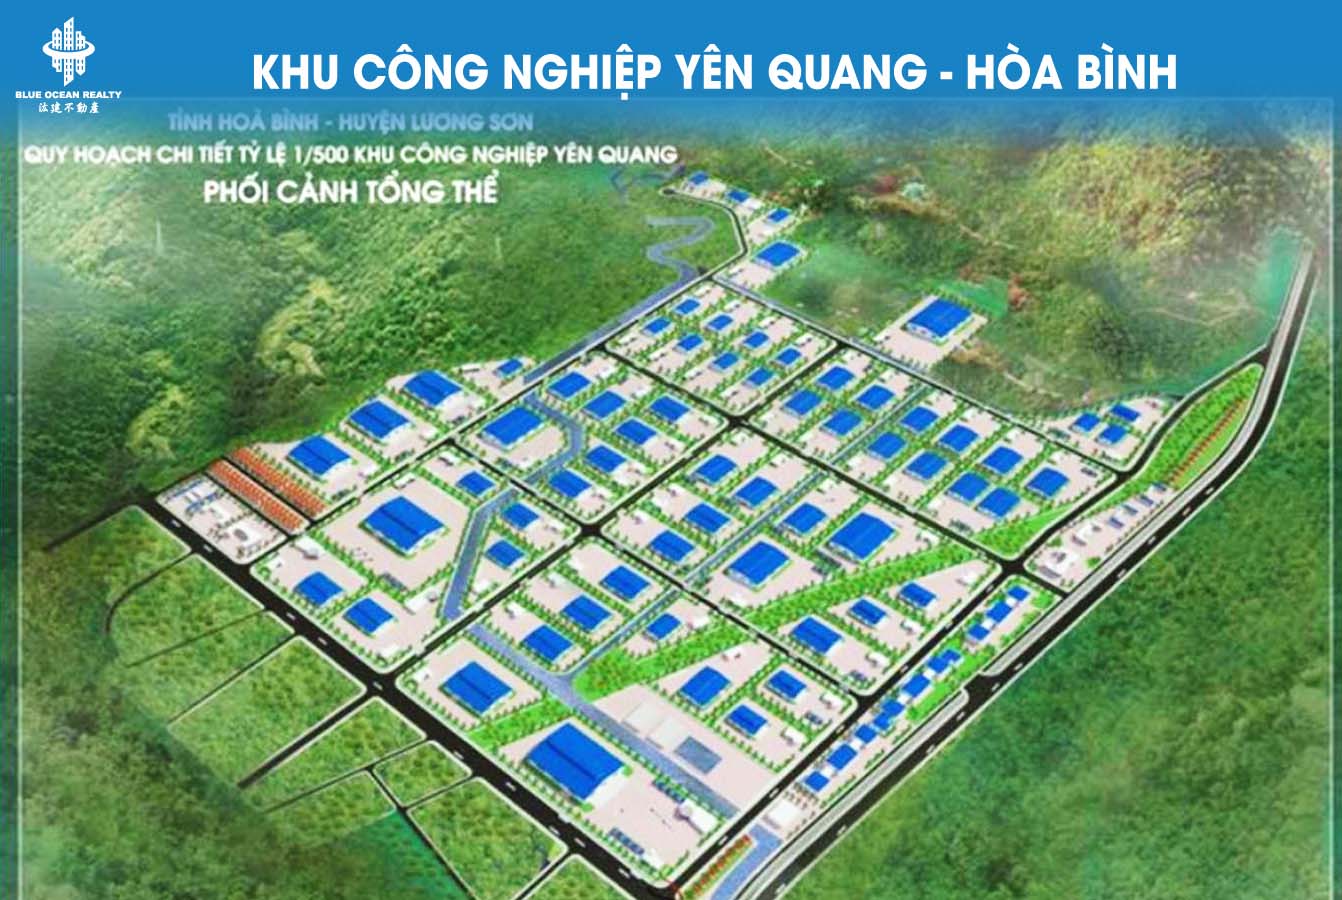 Khu công nghiệp (KCN) Yên Quang - Hòa Bình